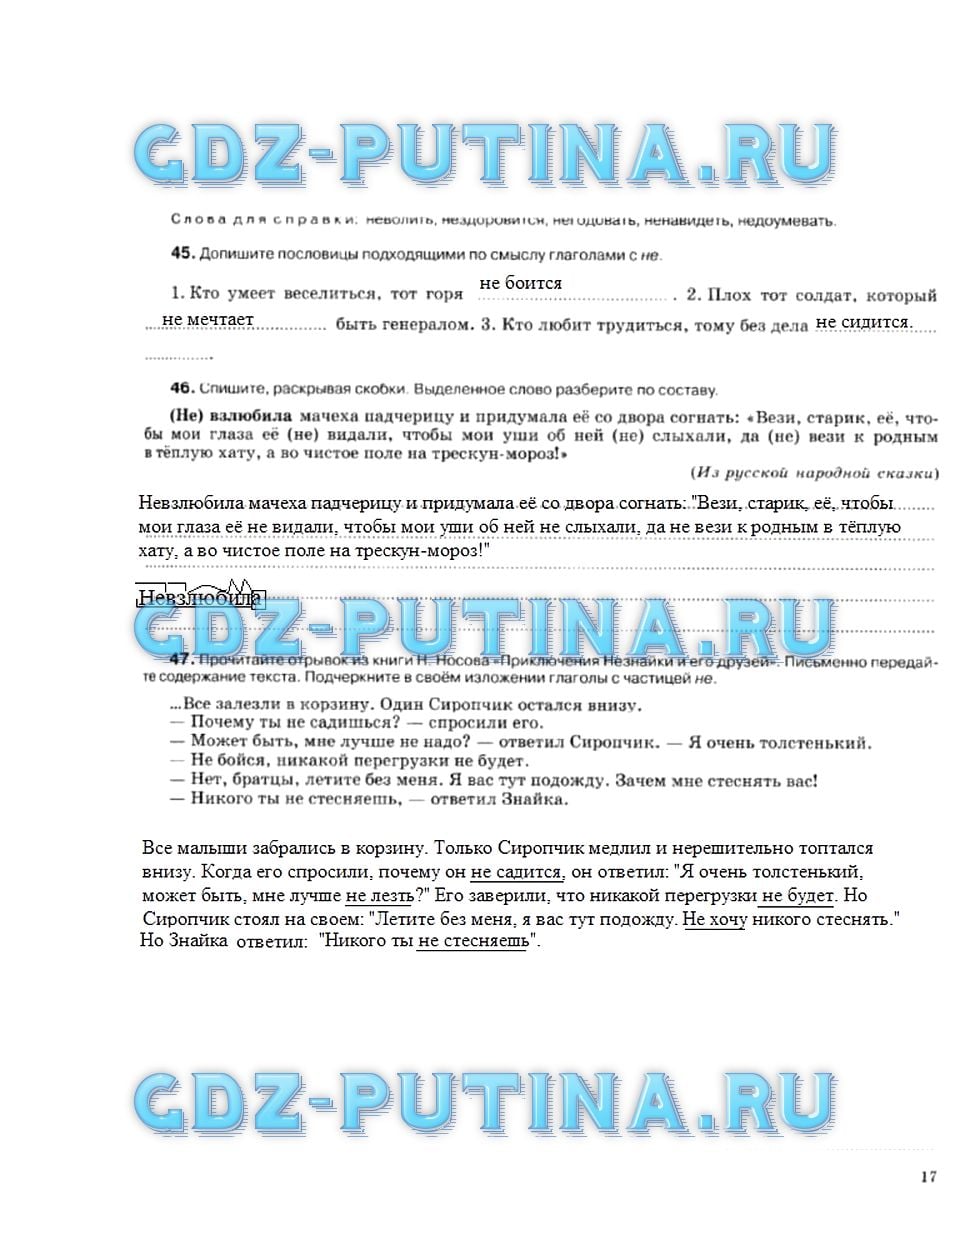 гдз 5 класс рабочая тетрадь страница 17 русский язык Ларионова